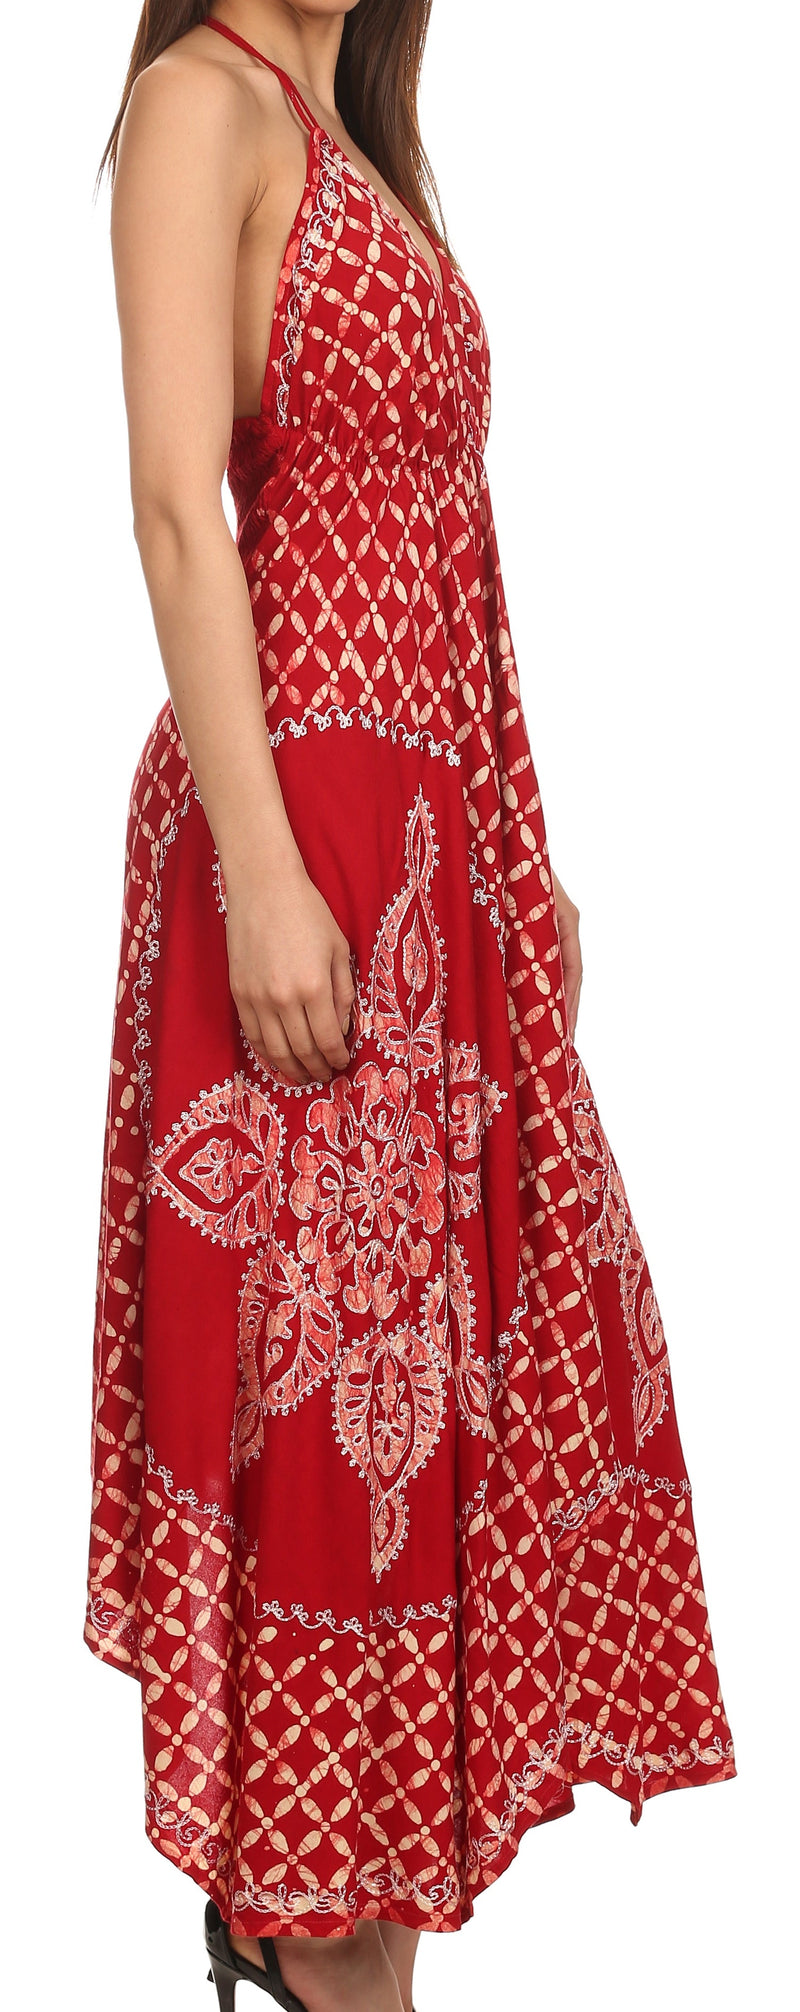 Sakkas Shana Batik Embroidered Handkerchief Hem Adjustable Halter Dress